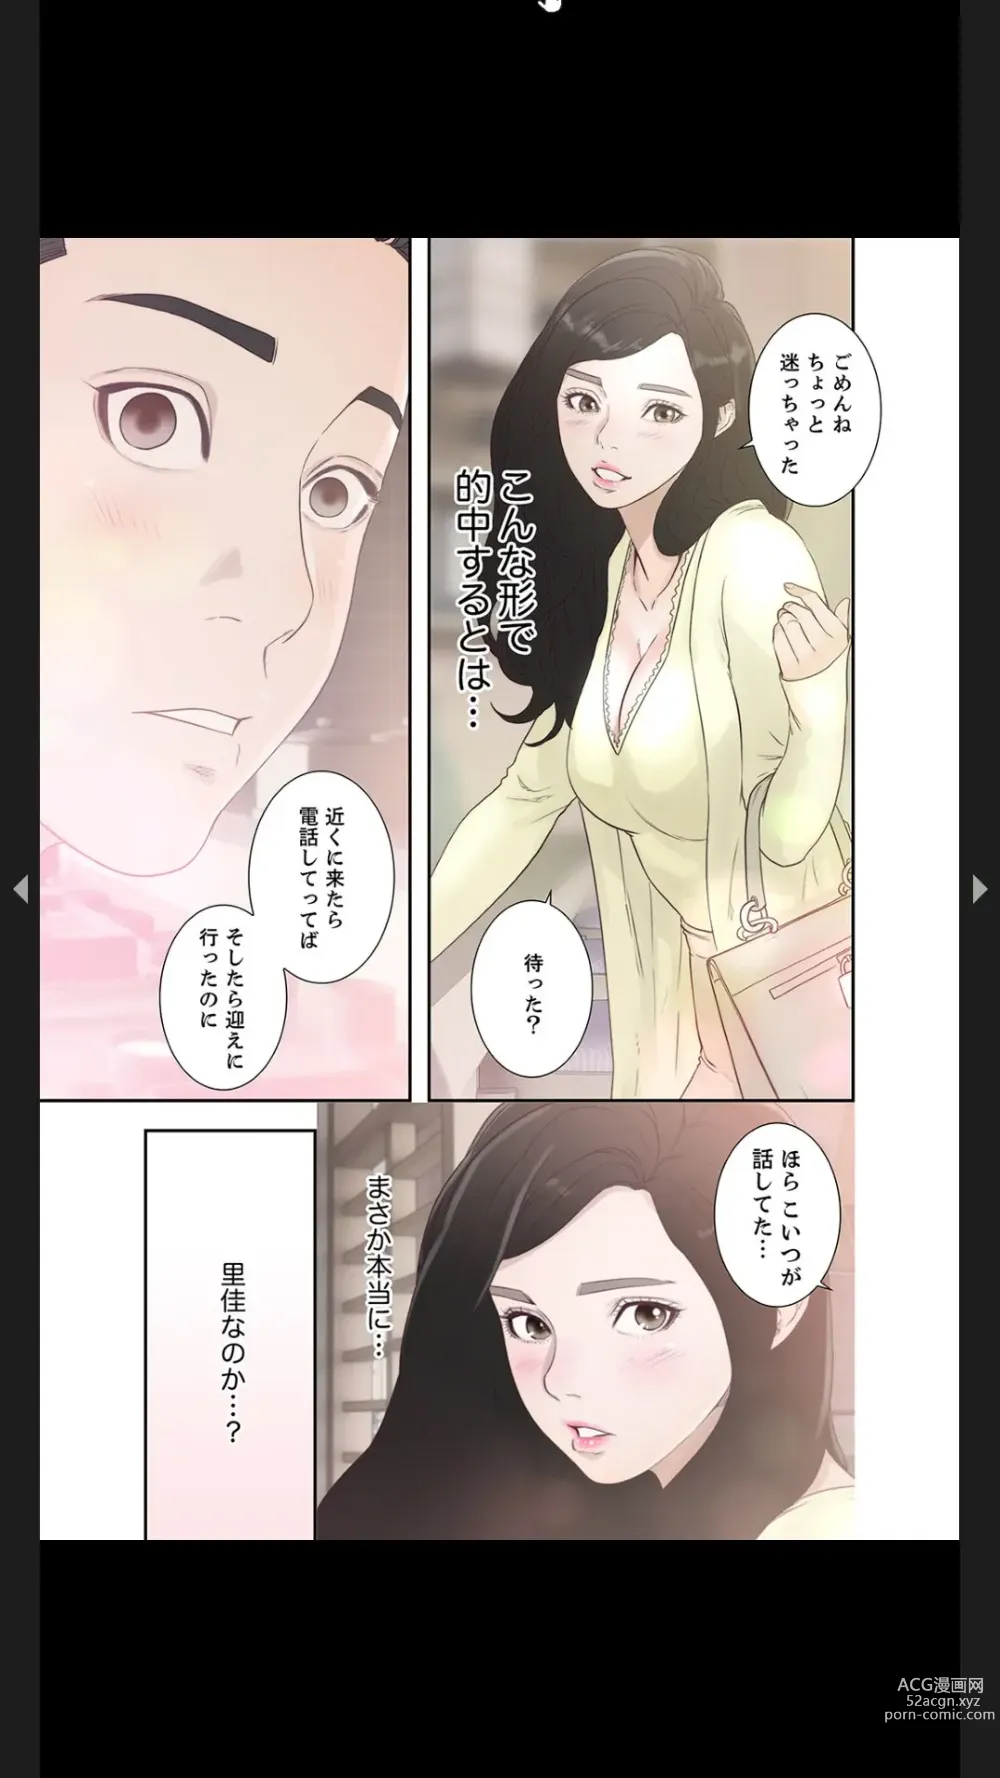 Page 23 of manga Moto Kano 1-2